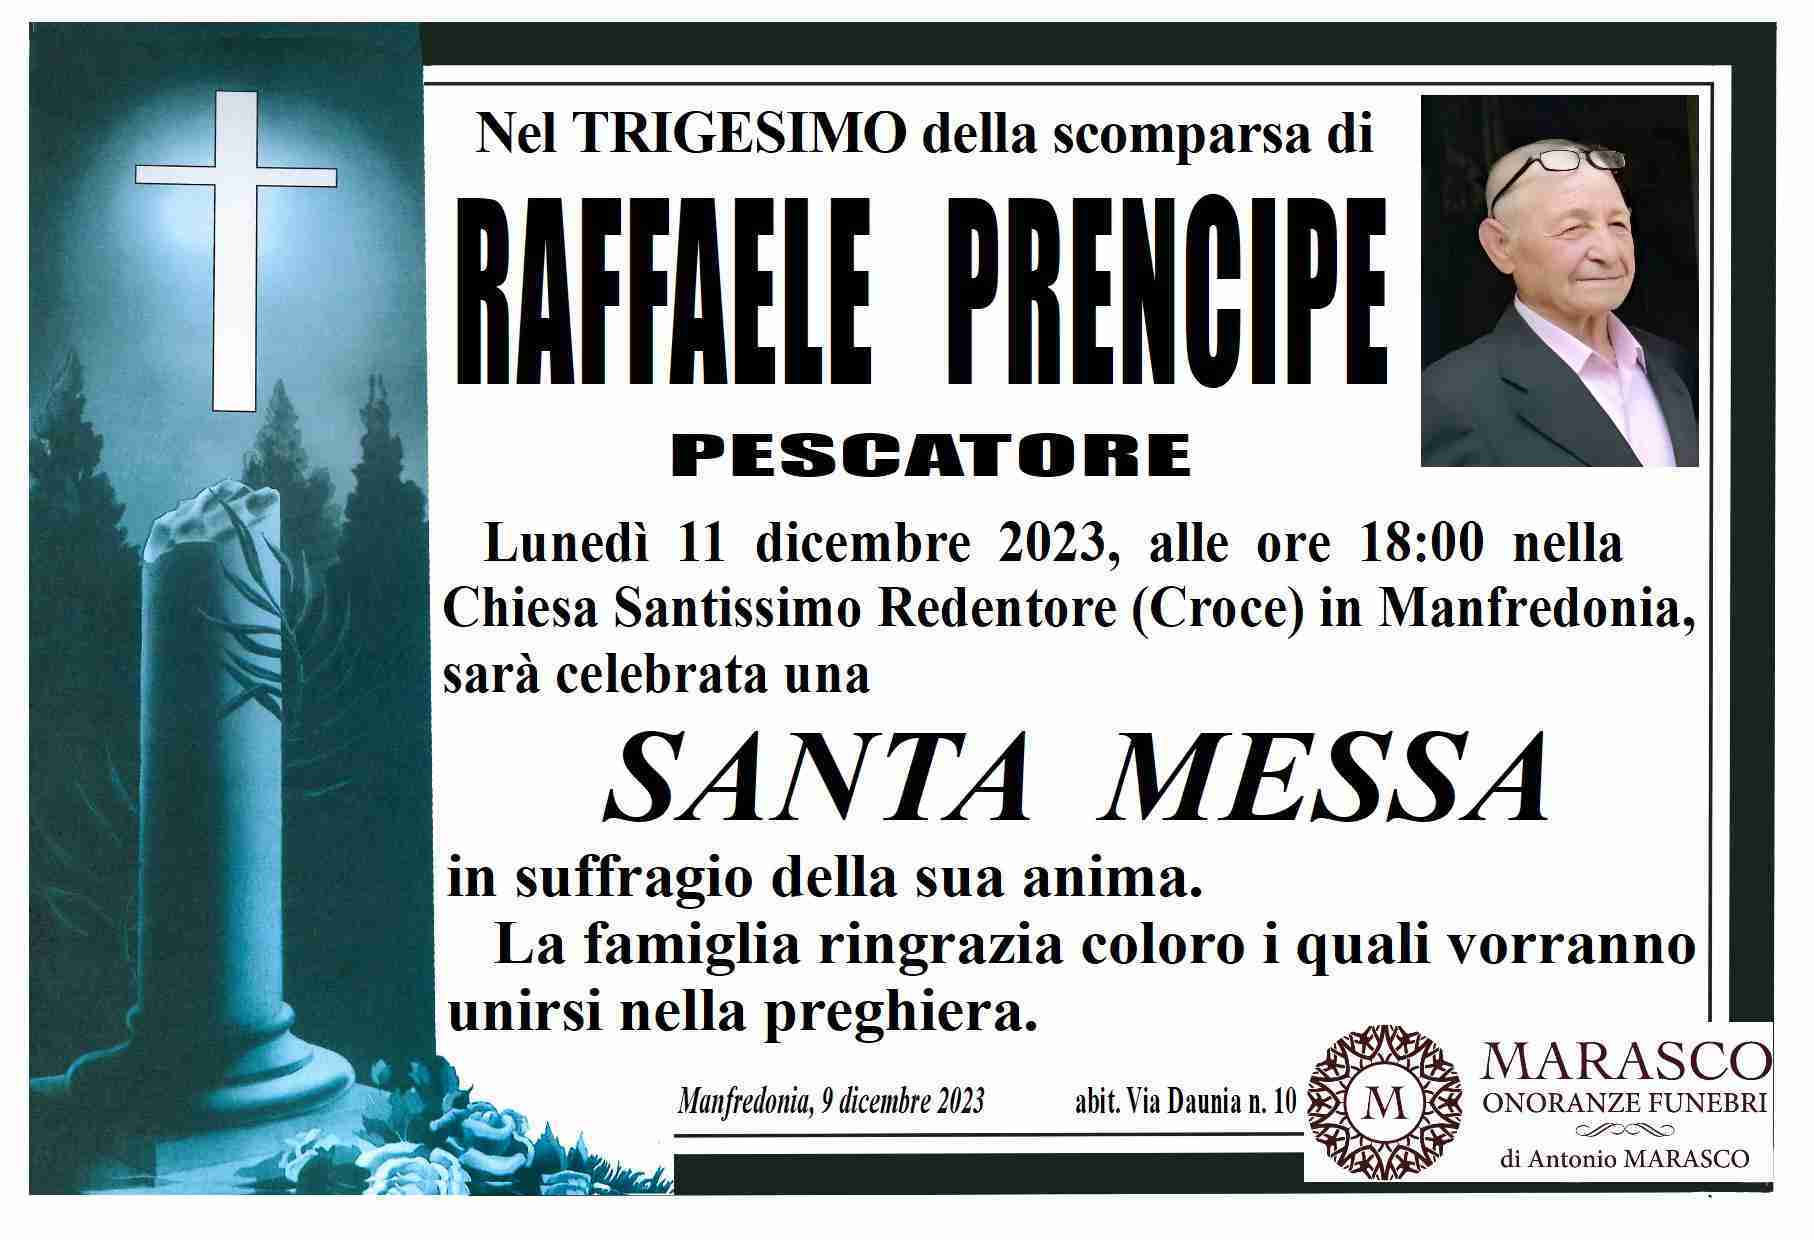 Raffaele Prencipe